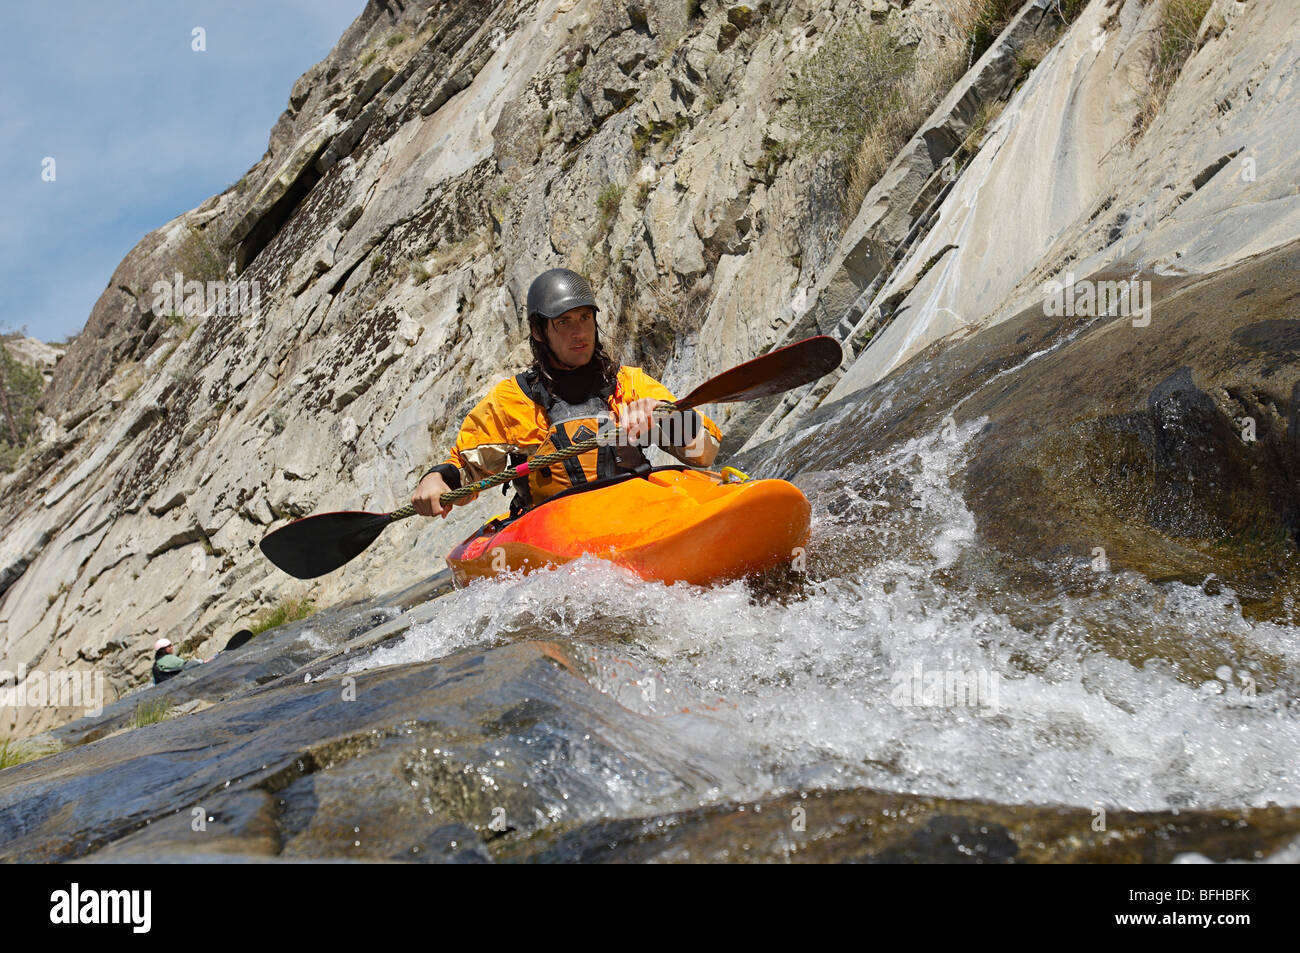 Man kayaking in mountain river Stock Photo